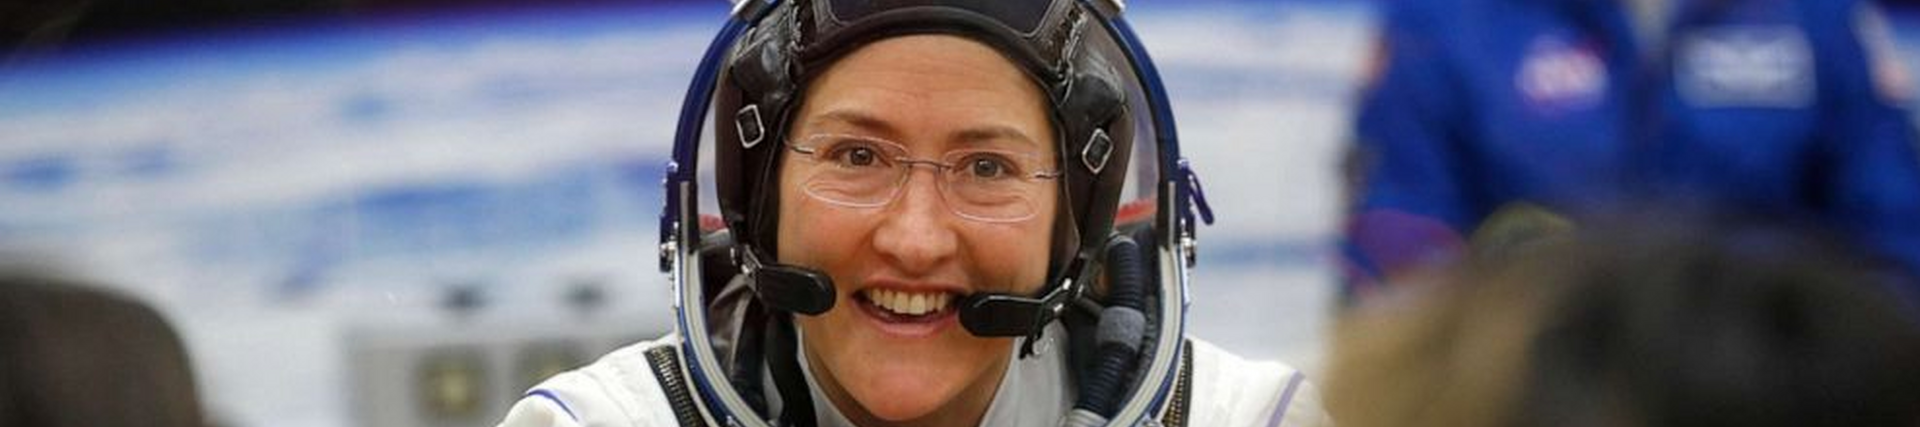 Women in space international women's day